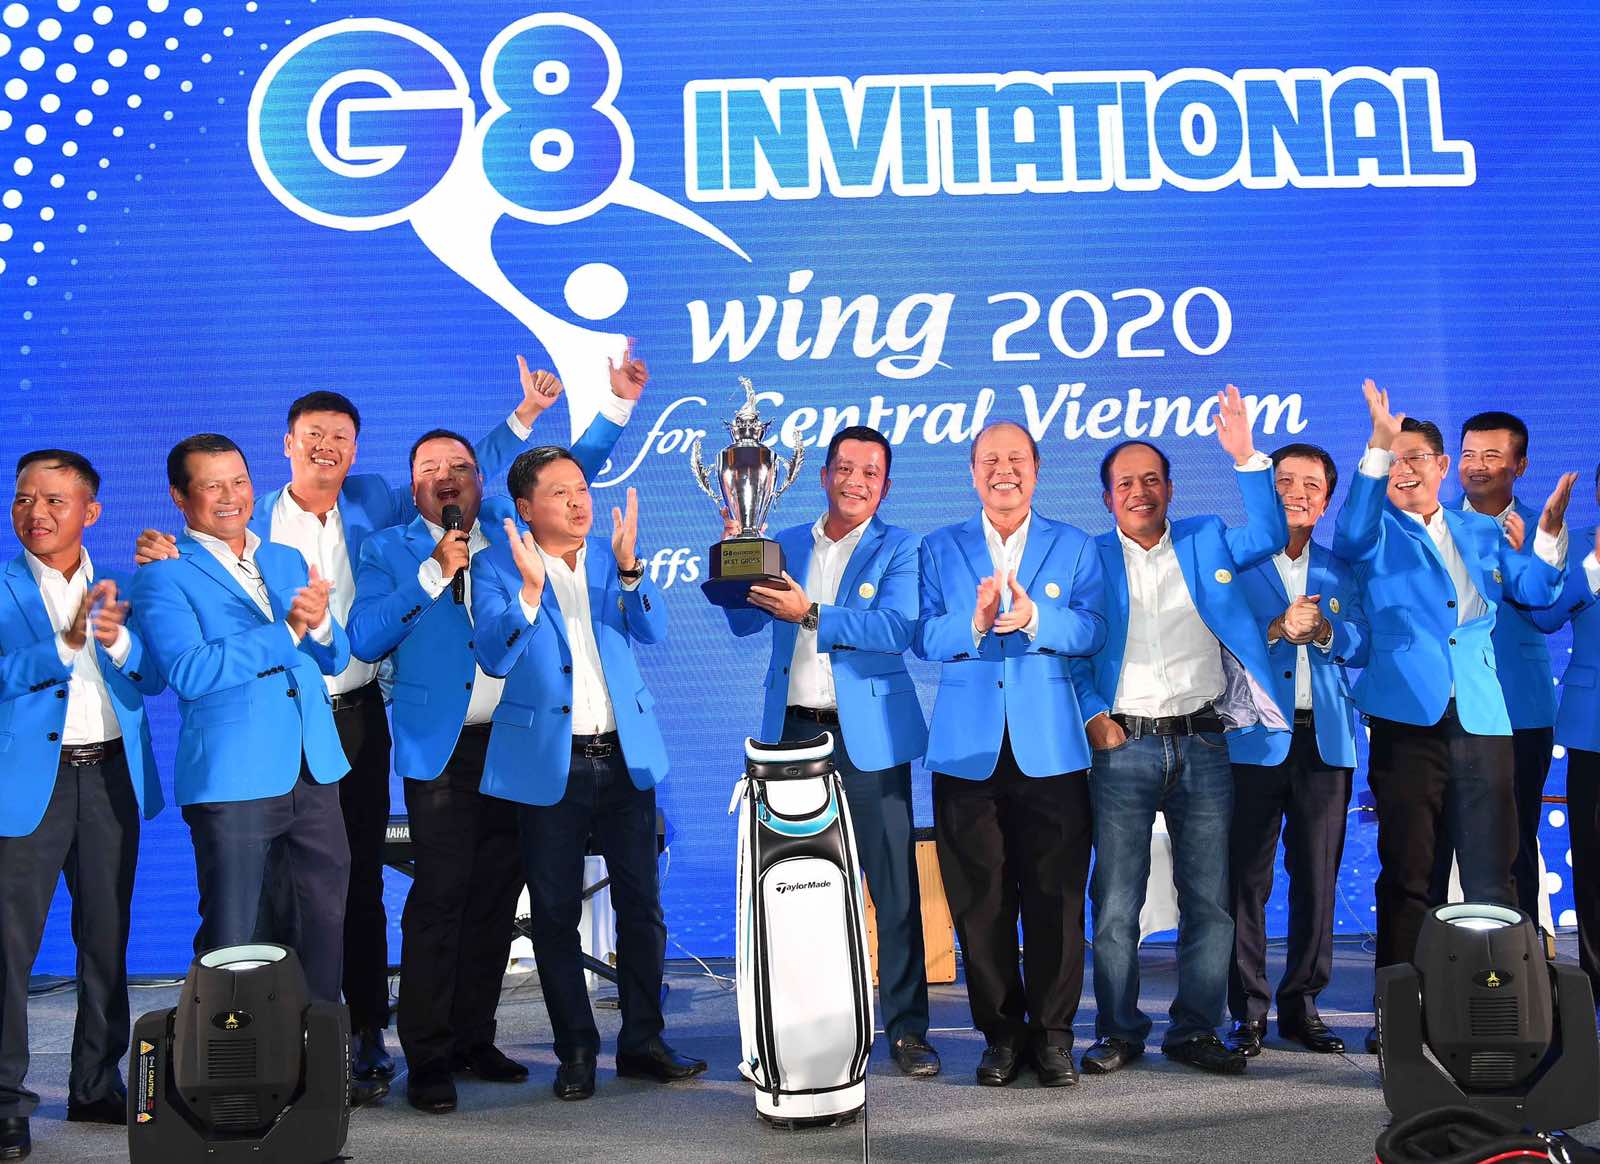 Giải golf G8 Invitational 2020: Hơn 4 tỷ đồng quyên góp cho miền Trung